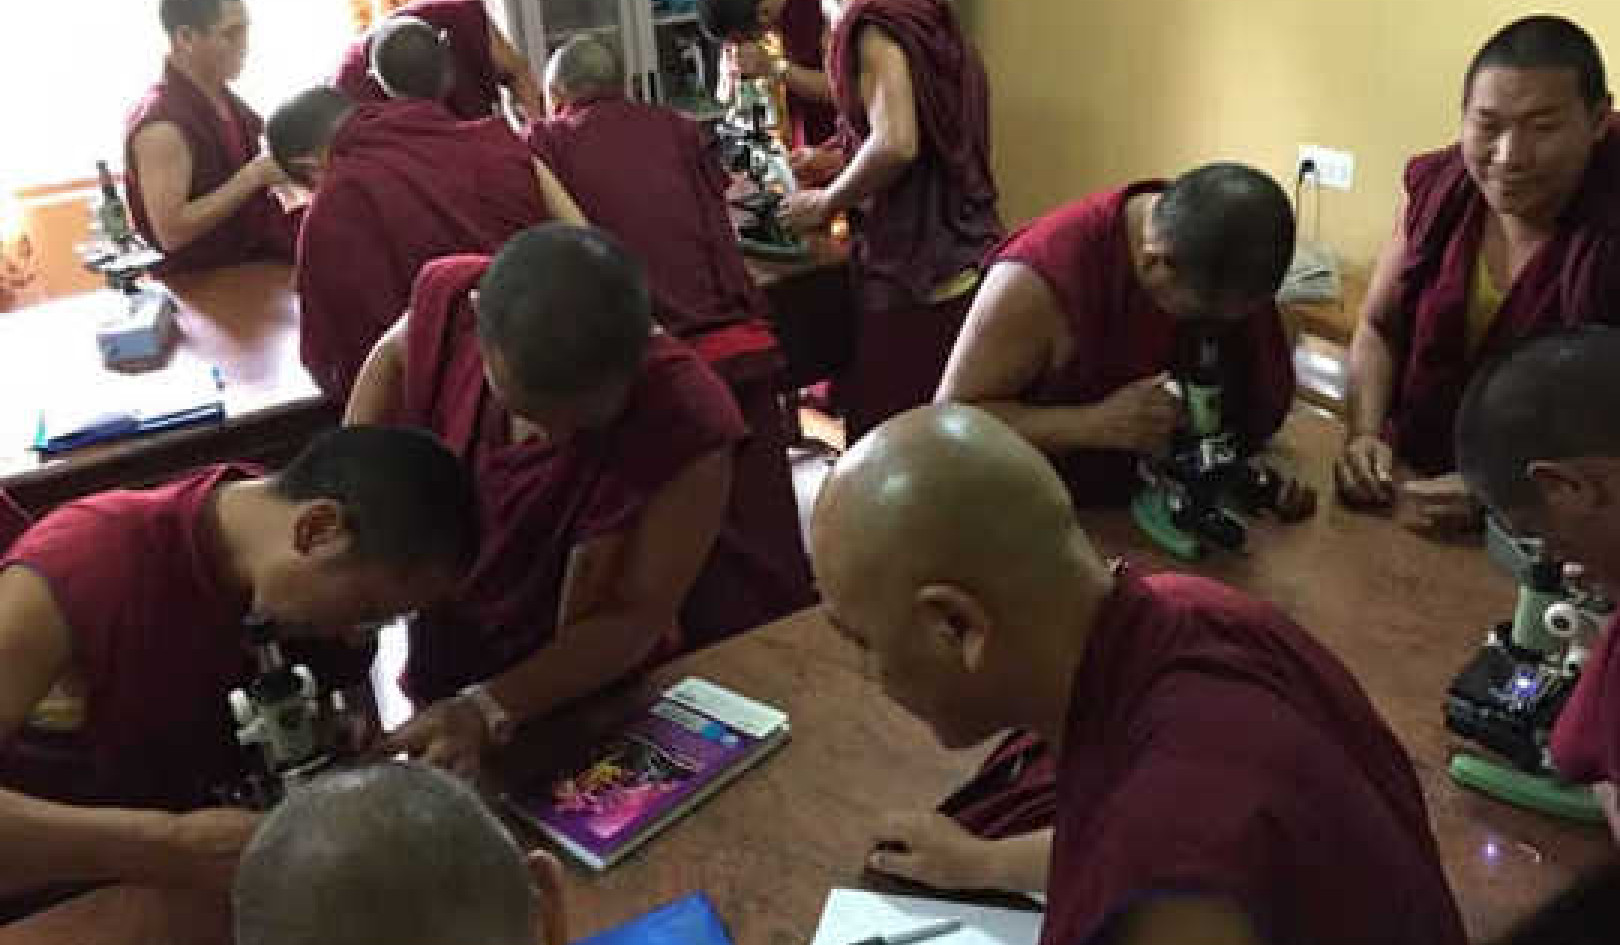 ما تعلمته هو تدريس علم الأحياء للرهبان البوذيين التبتيين